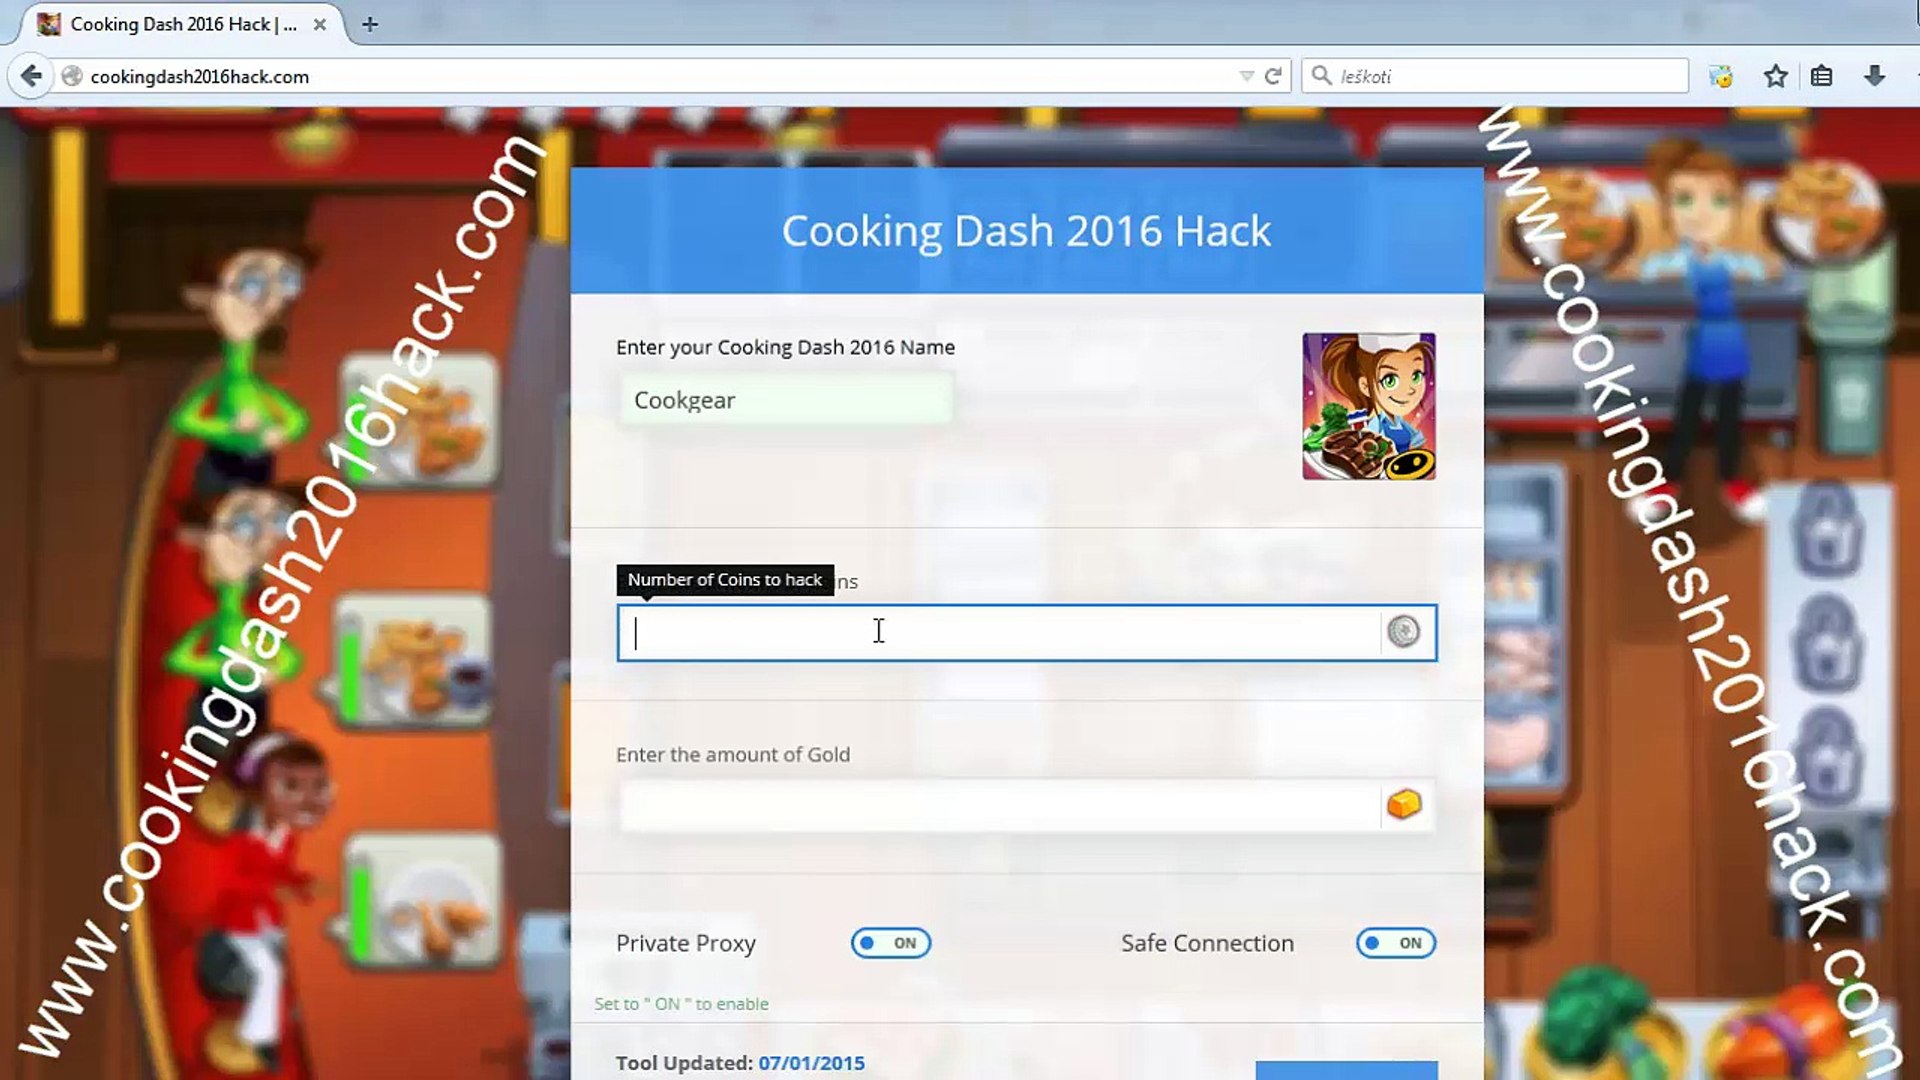 Cooking dash hack no survey no download 2016